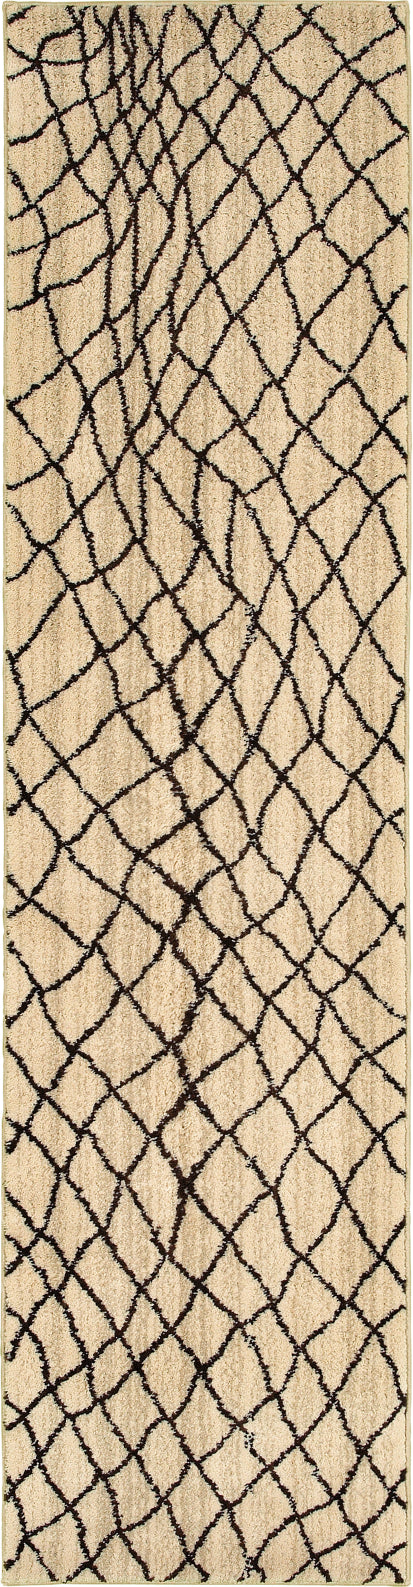 Oriental Weavers Marrakesh 602D0 Ivory/Brown Area Rug 2' 7 X 10' 0 Runner